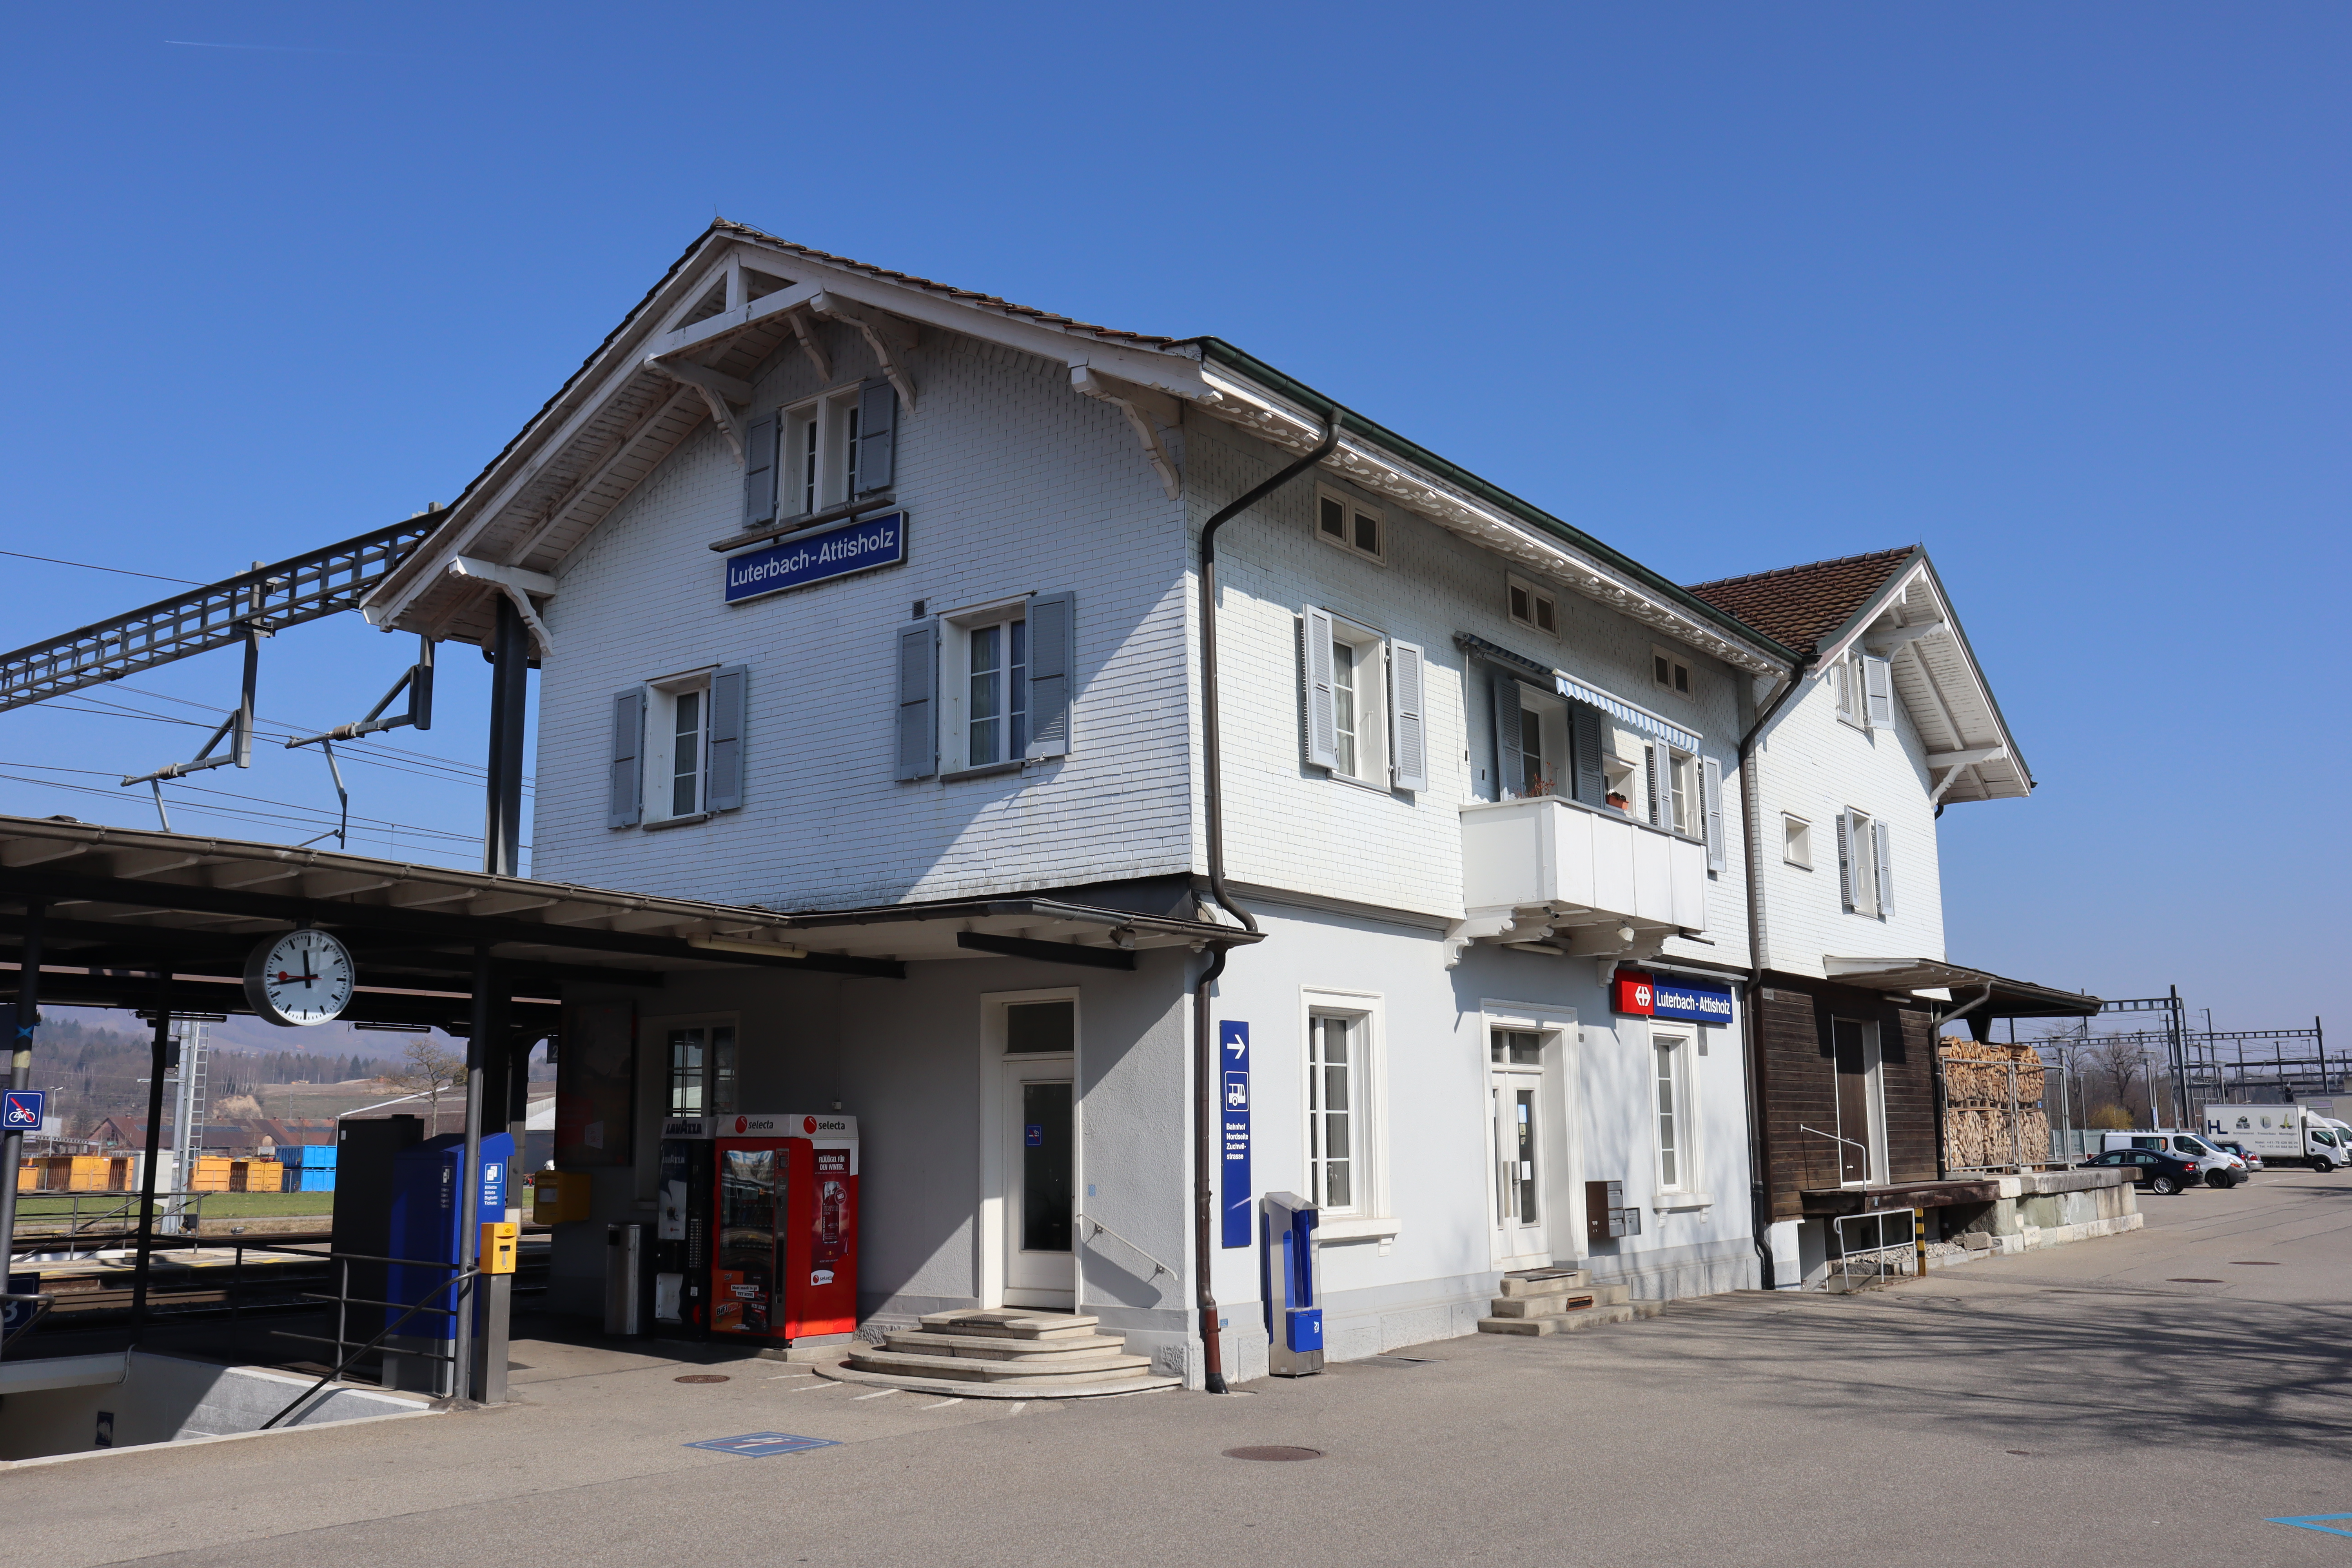 Bahnhof Luterbach-Attisholz, Ausgangspunkt für den Dorfrundgang.